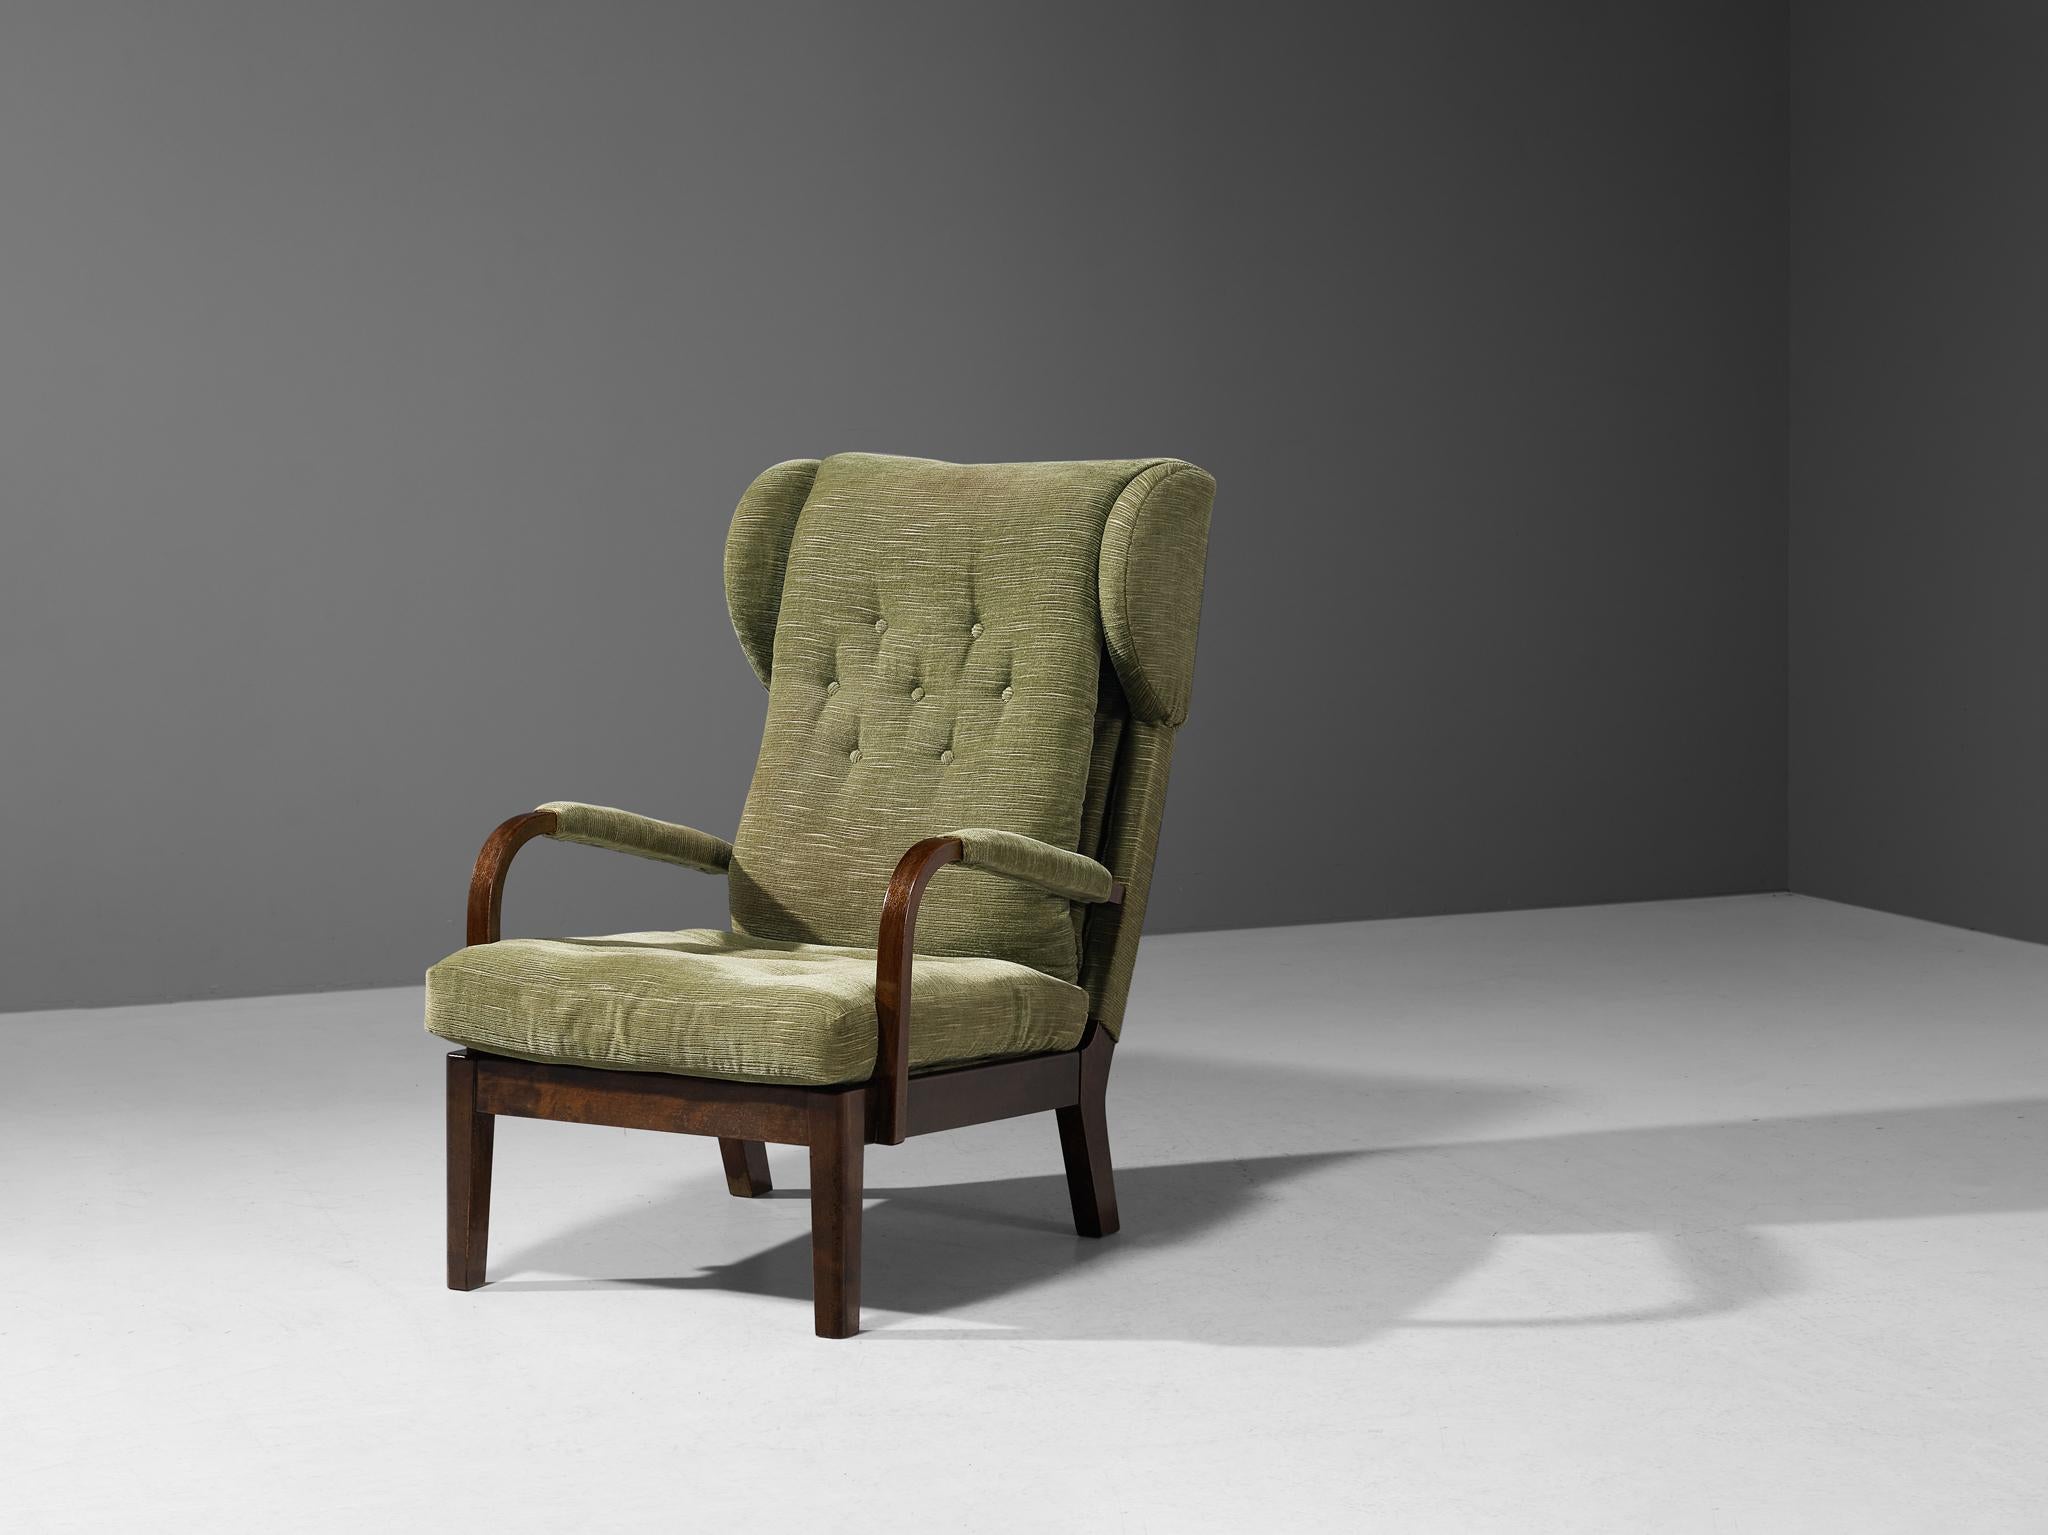 Sessel, Stoff, Buche, Metall, Schweden, um 1930

Dieser Loungesessel basiert auf einer soliden Konstruktion, die sich durch feine Linien und Formen auszeichnet. Die Rückenlehne wirkt durch die längliche Form und die großen Ohren, die die Kissen auf